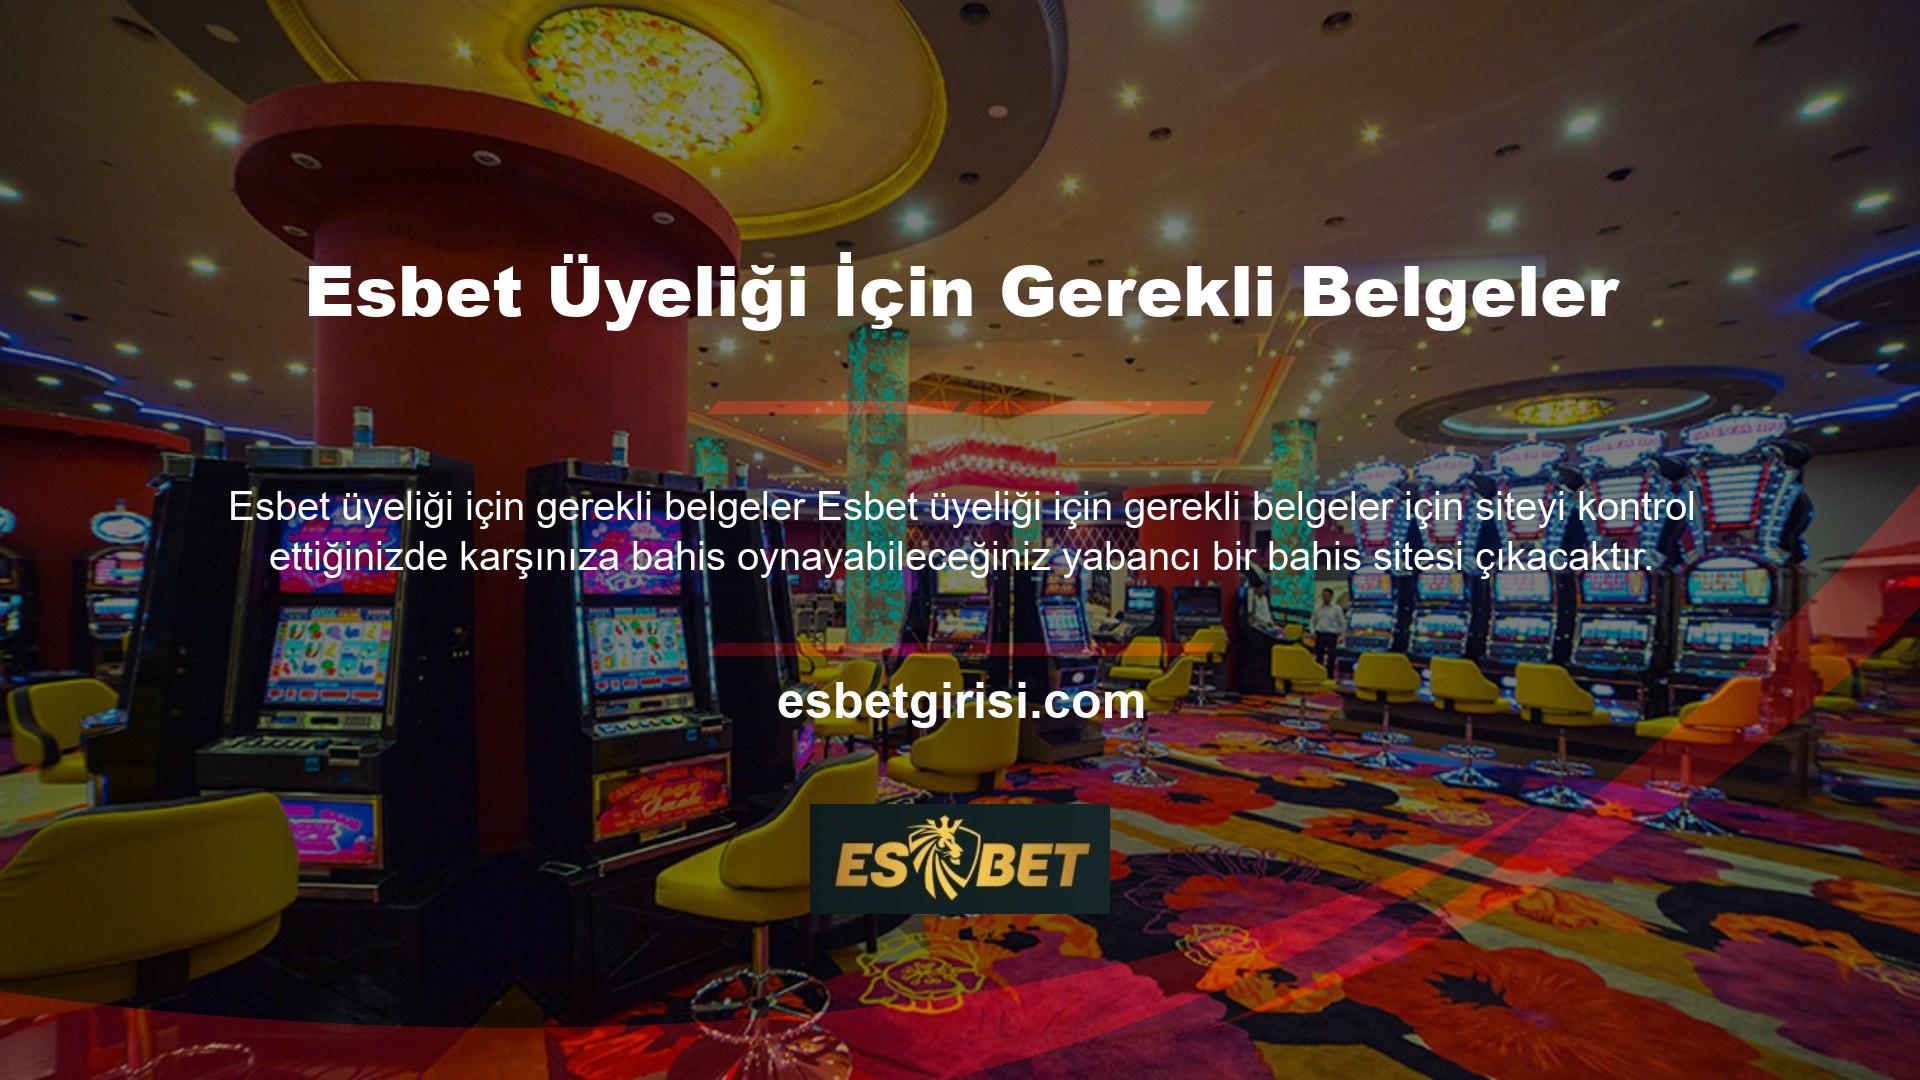 Bu, elektronik casino alanında çalışan bir şirketin web sitesidir